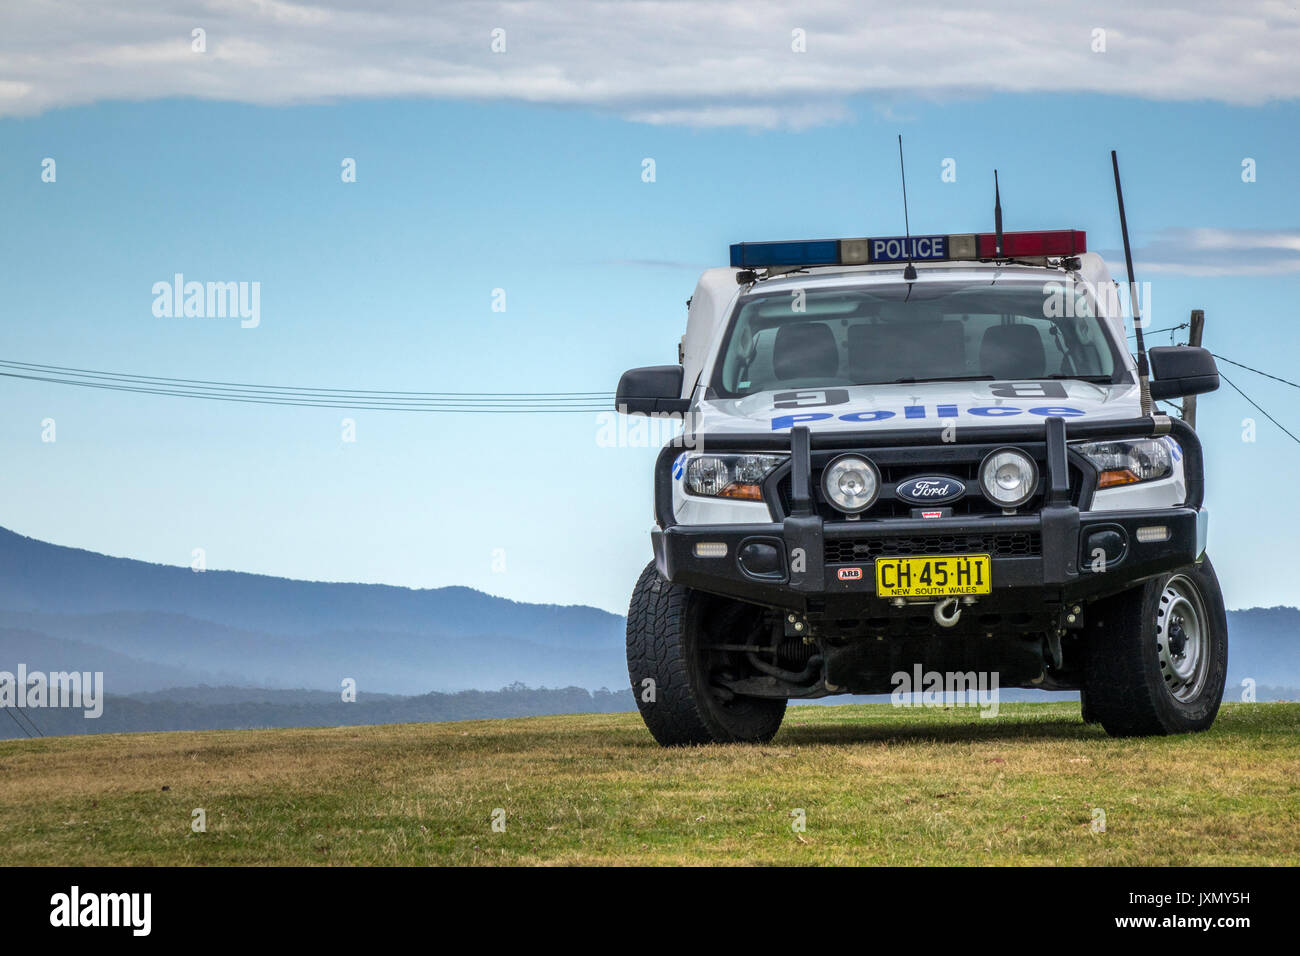 Australische Lkw Polizei Träger des New South Wales Polizei geparkt In Eden New South Wales Australien abholen Stockfoto